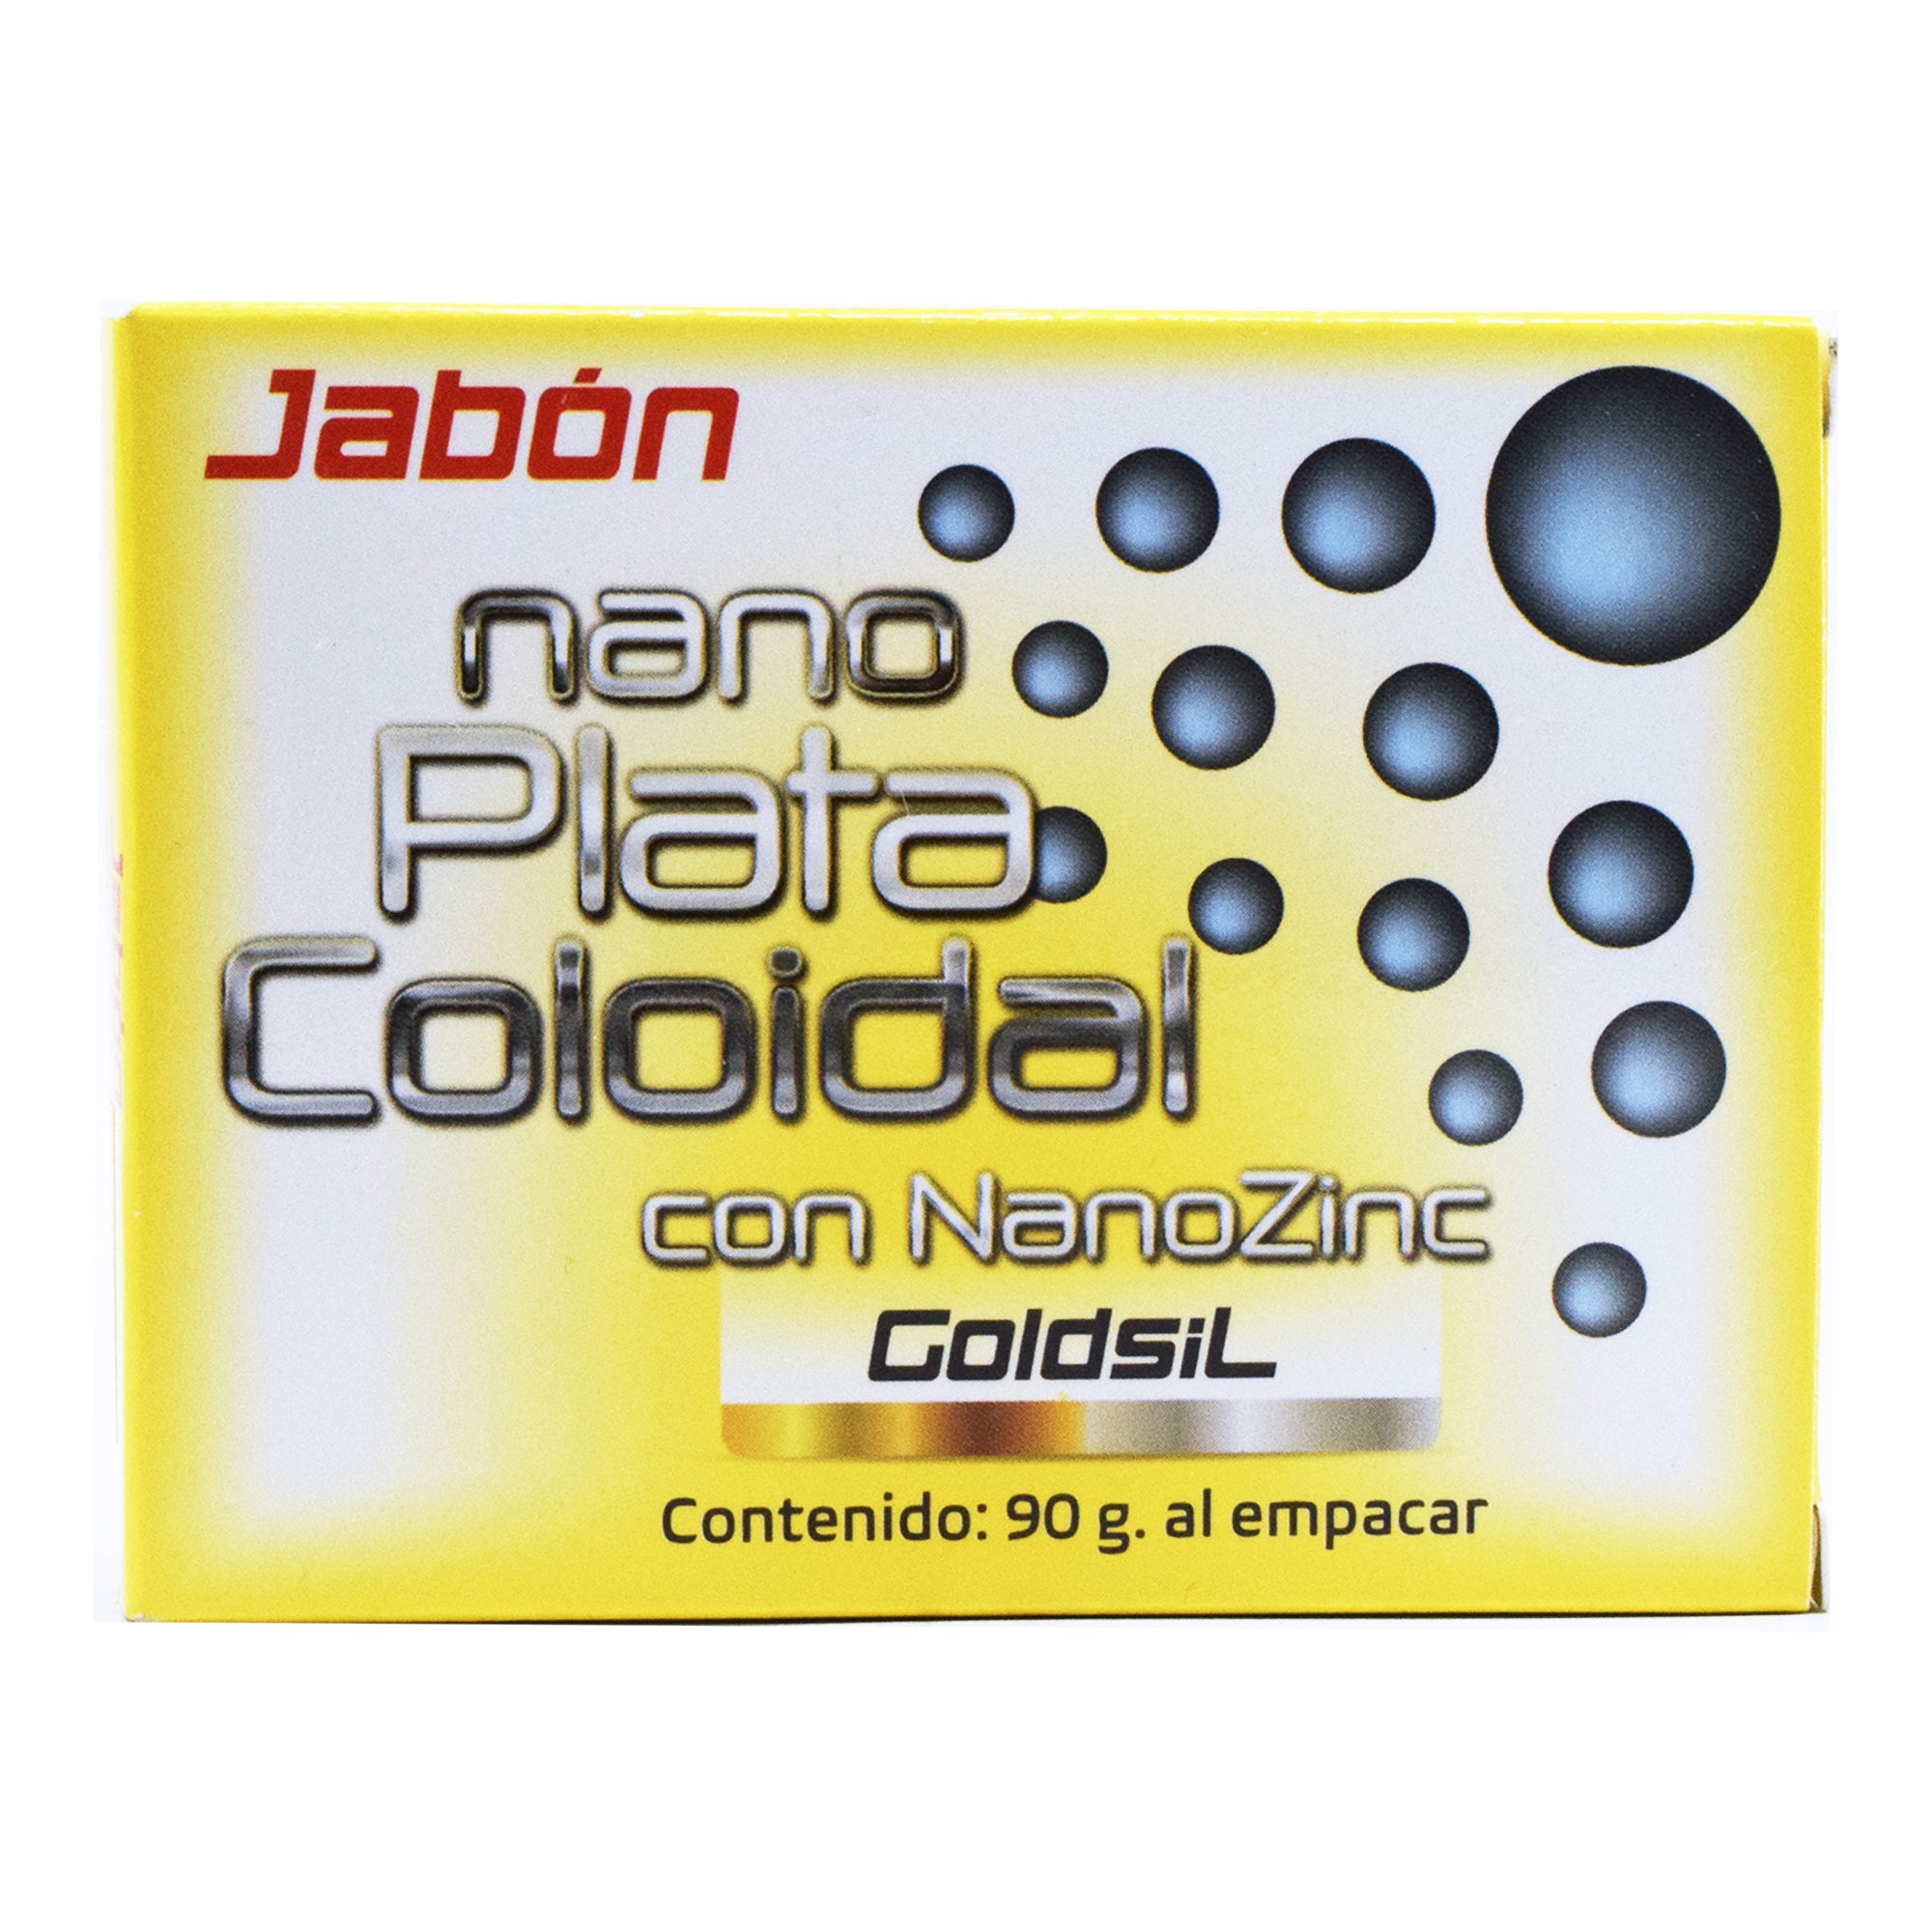 Jabon nano plata coloidal 90 g